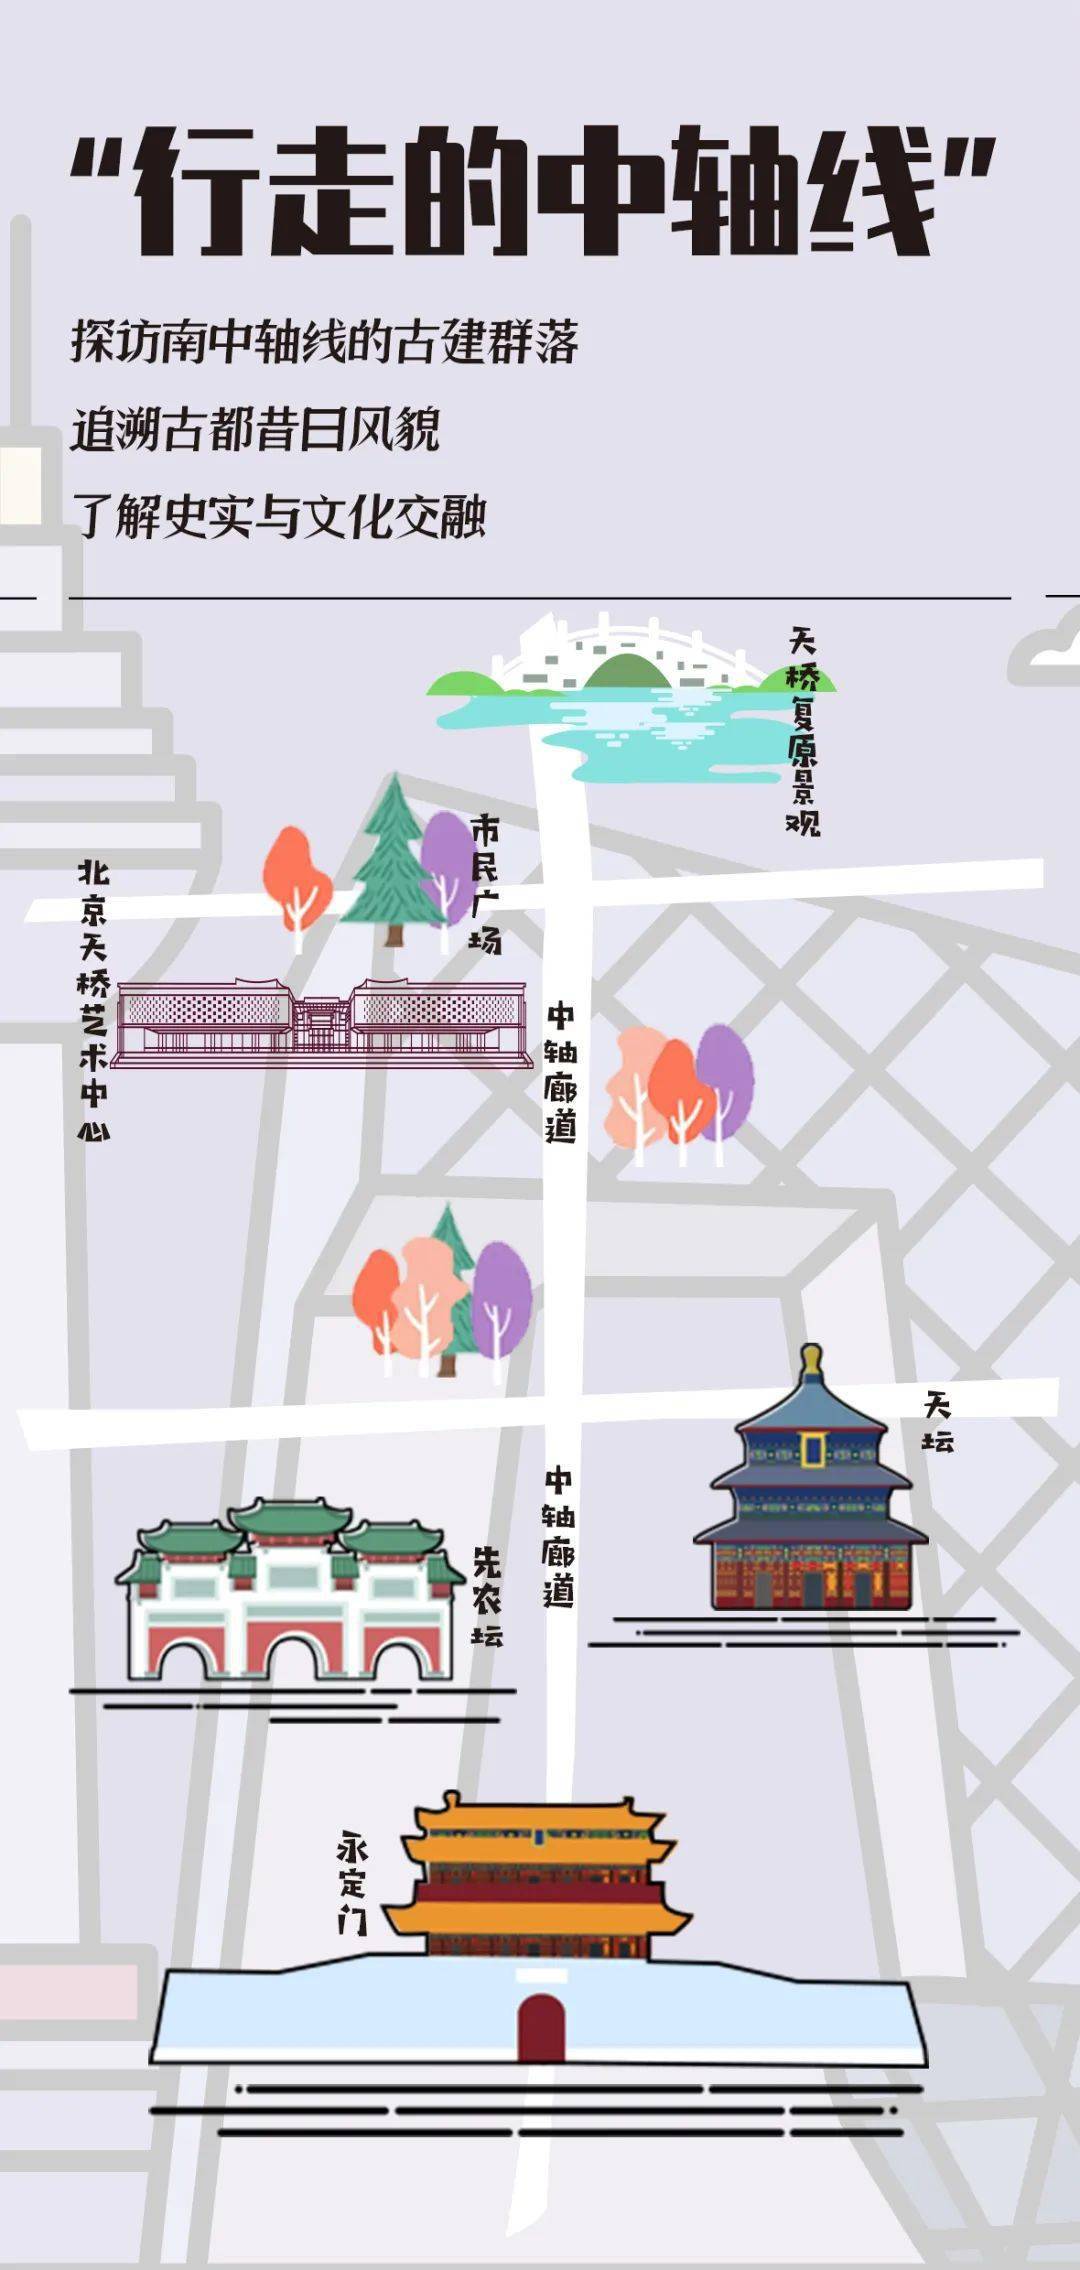 天桥复原景观,沿南中轴廊道京城龙脉,探访京城龙头永定门;追溯古都